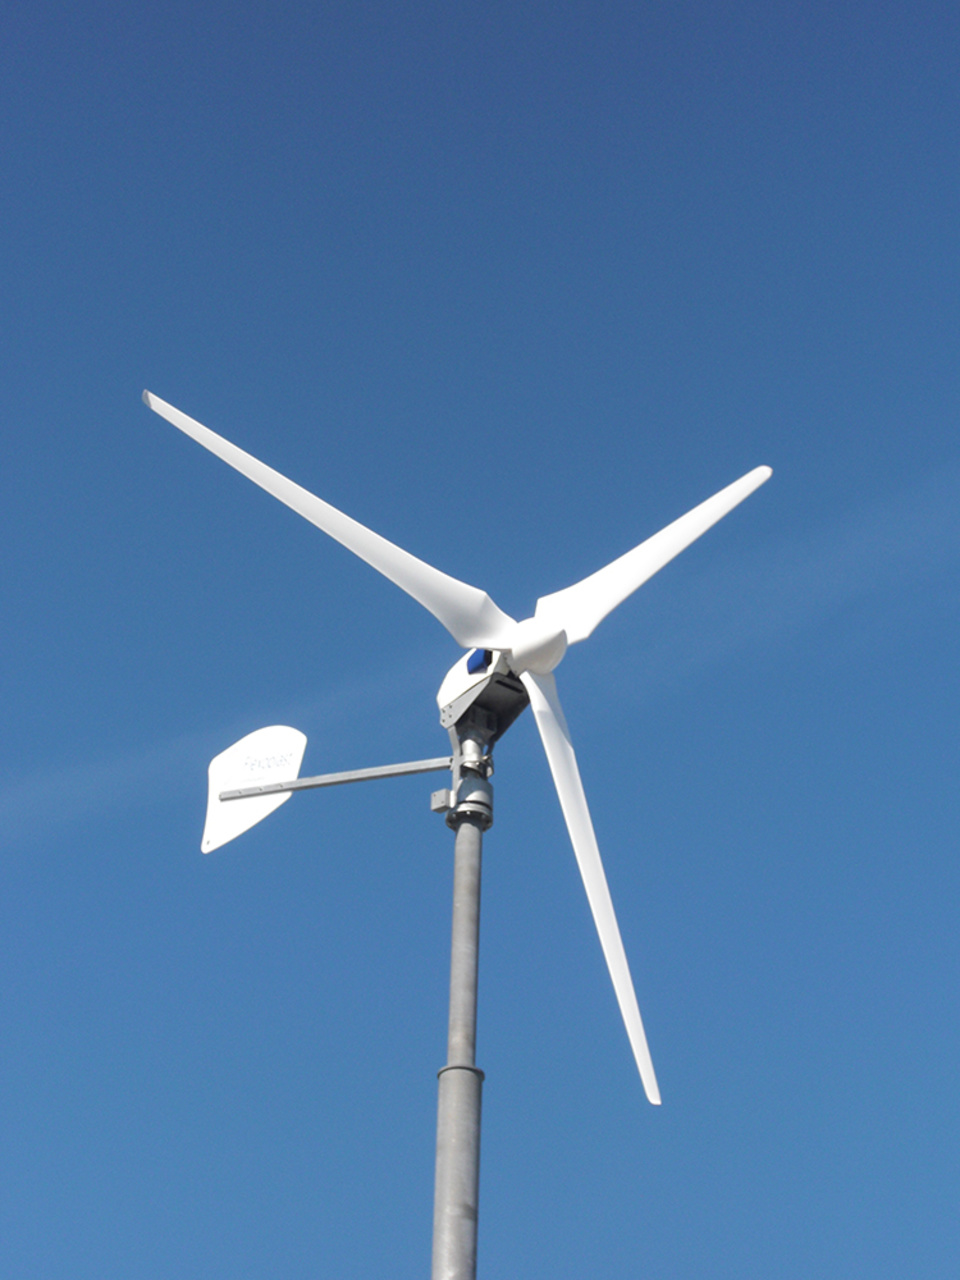 Windkraft2 bei Neidenberger Elektrotechnik GmbH in Feuchtwangen